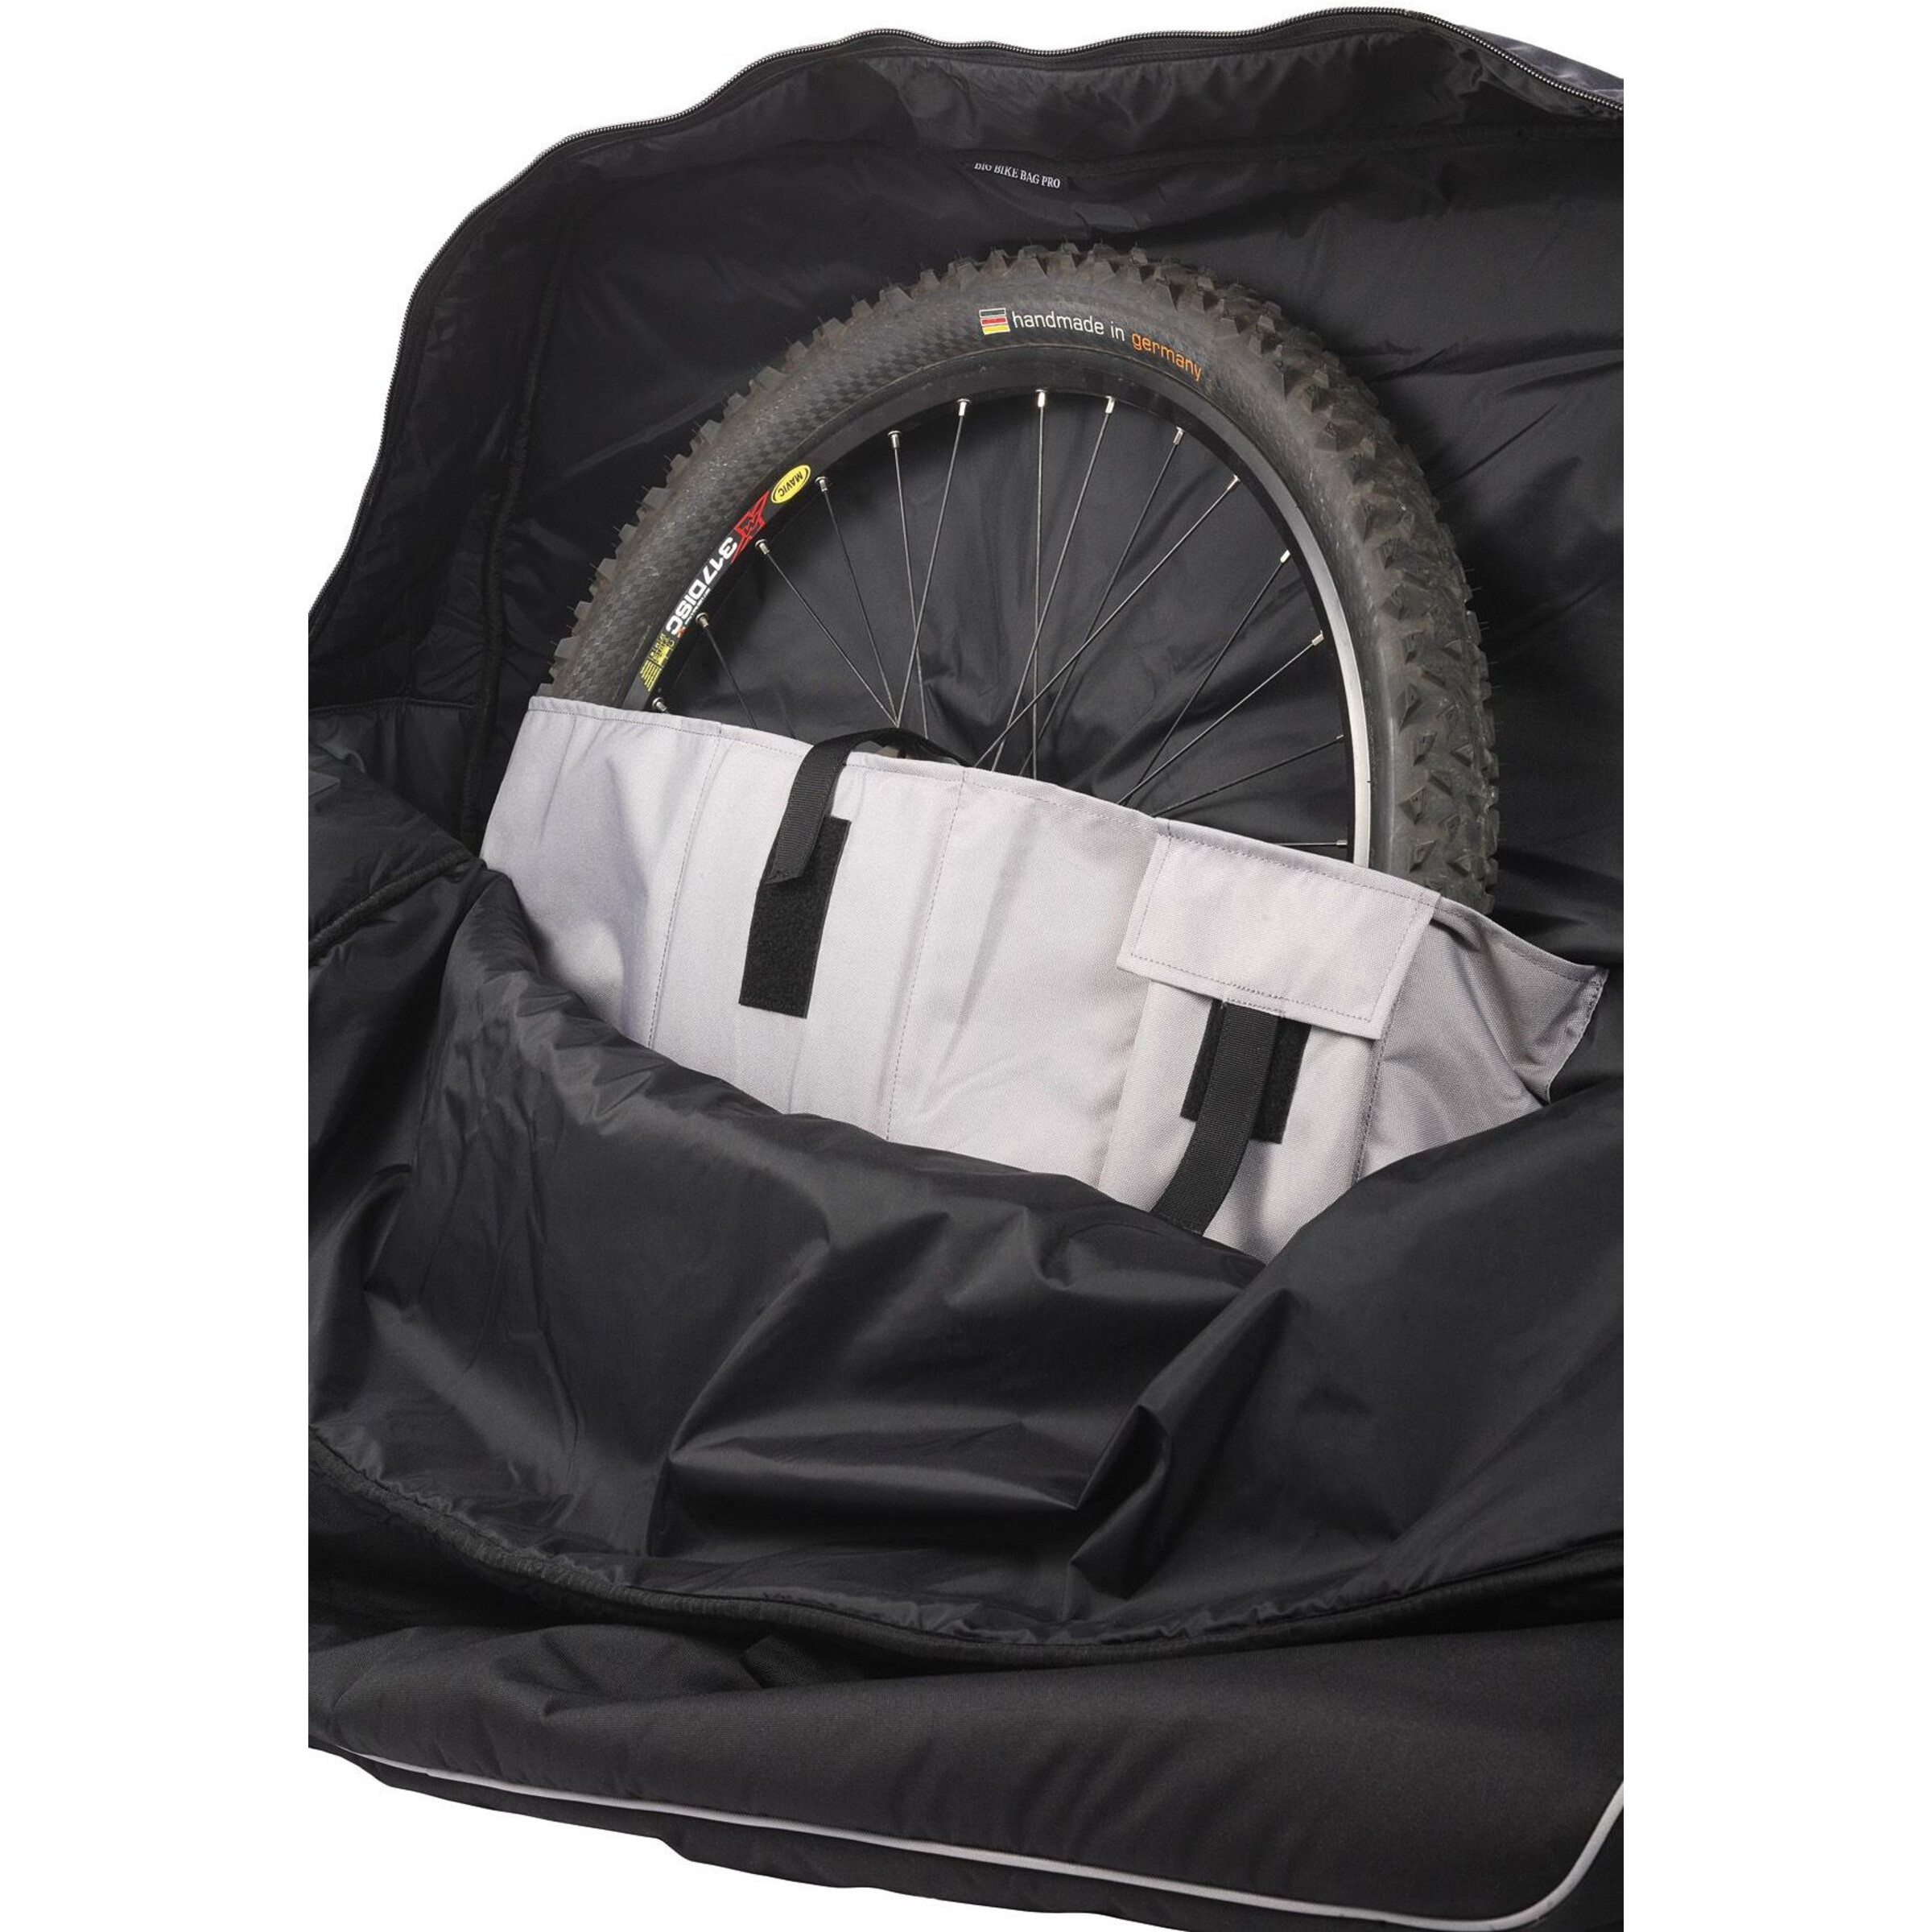 VAUDE Big Bike Bag Pro black/anthracite günstig kaufen